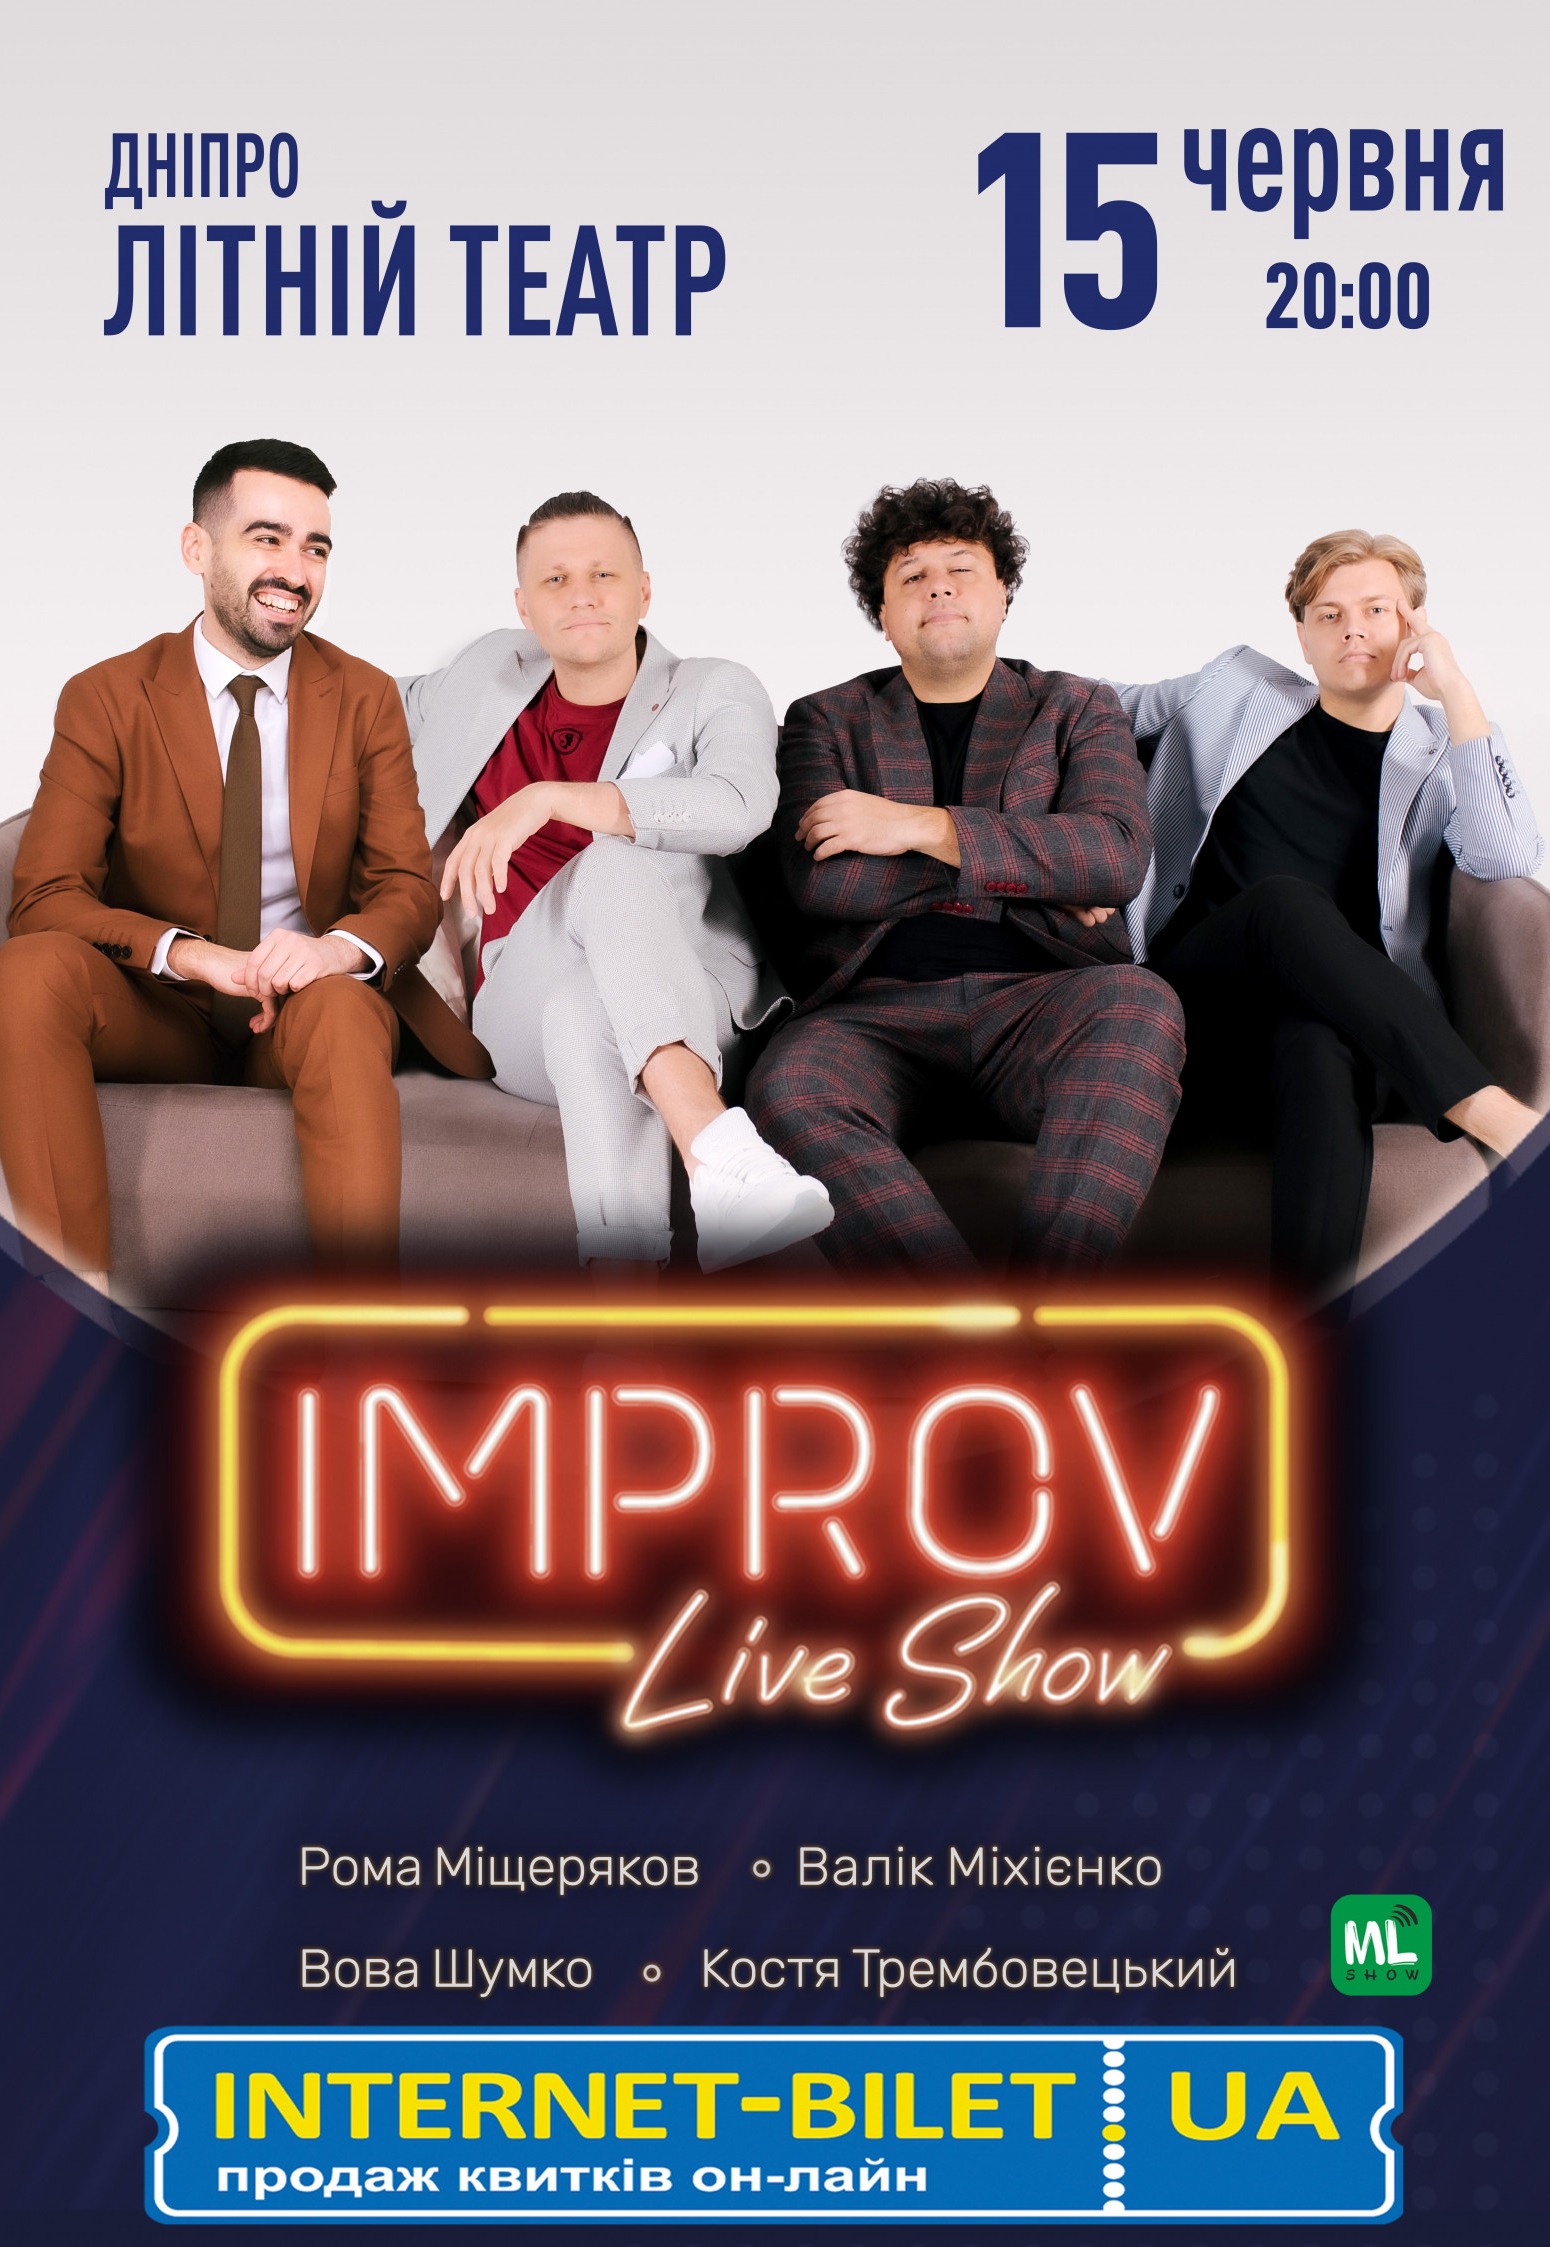 Improv Live Show Днепр, 15.06.2021, купить билеты. Афиша Днепра